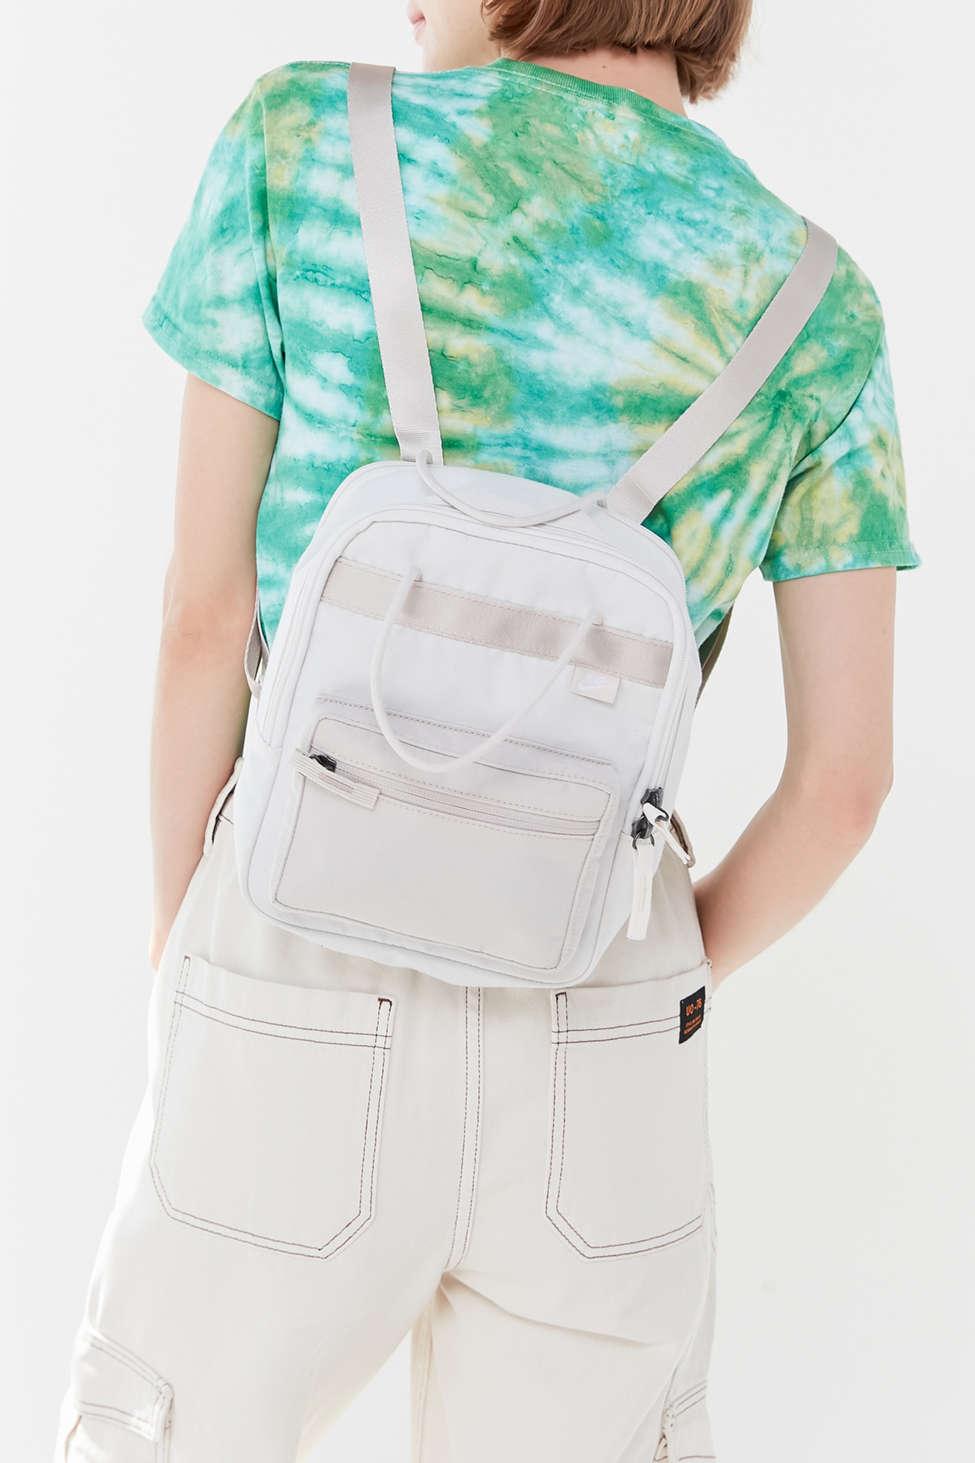 nike premium mini backpack in cream